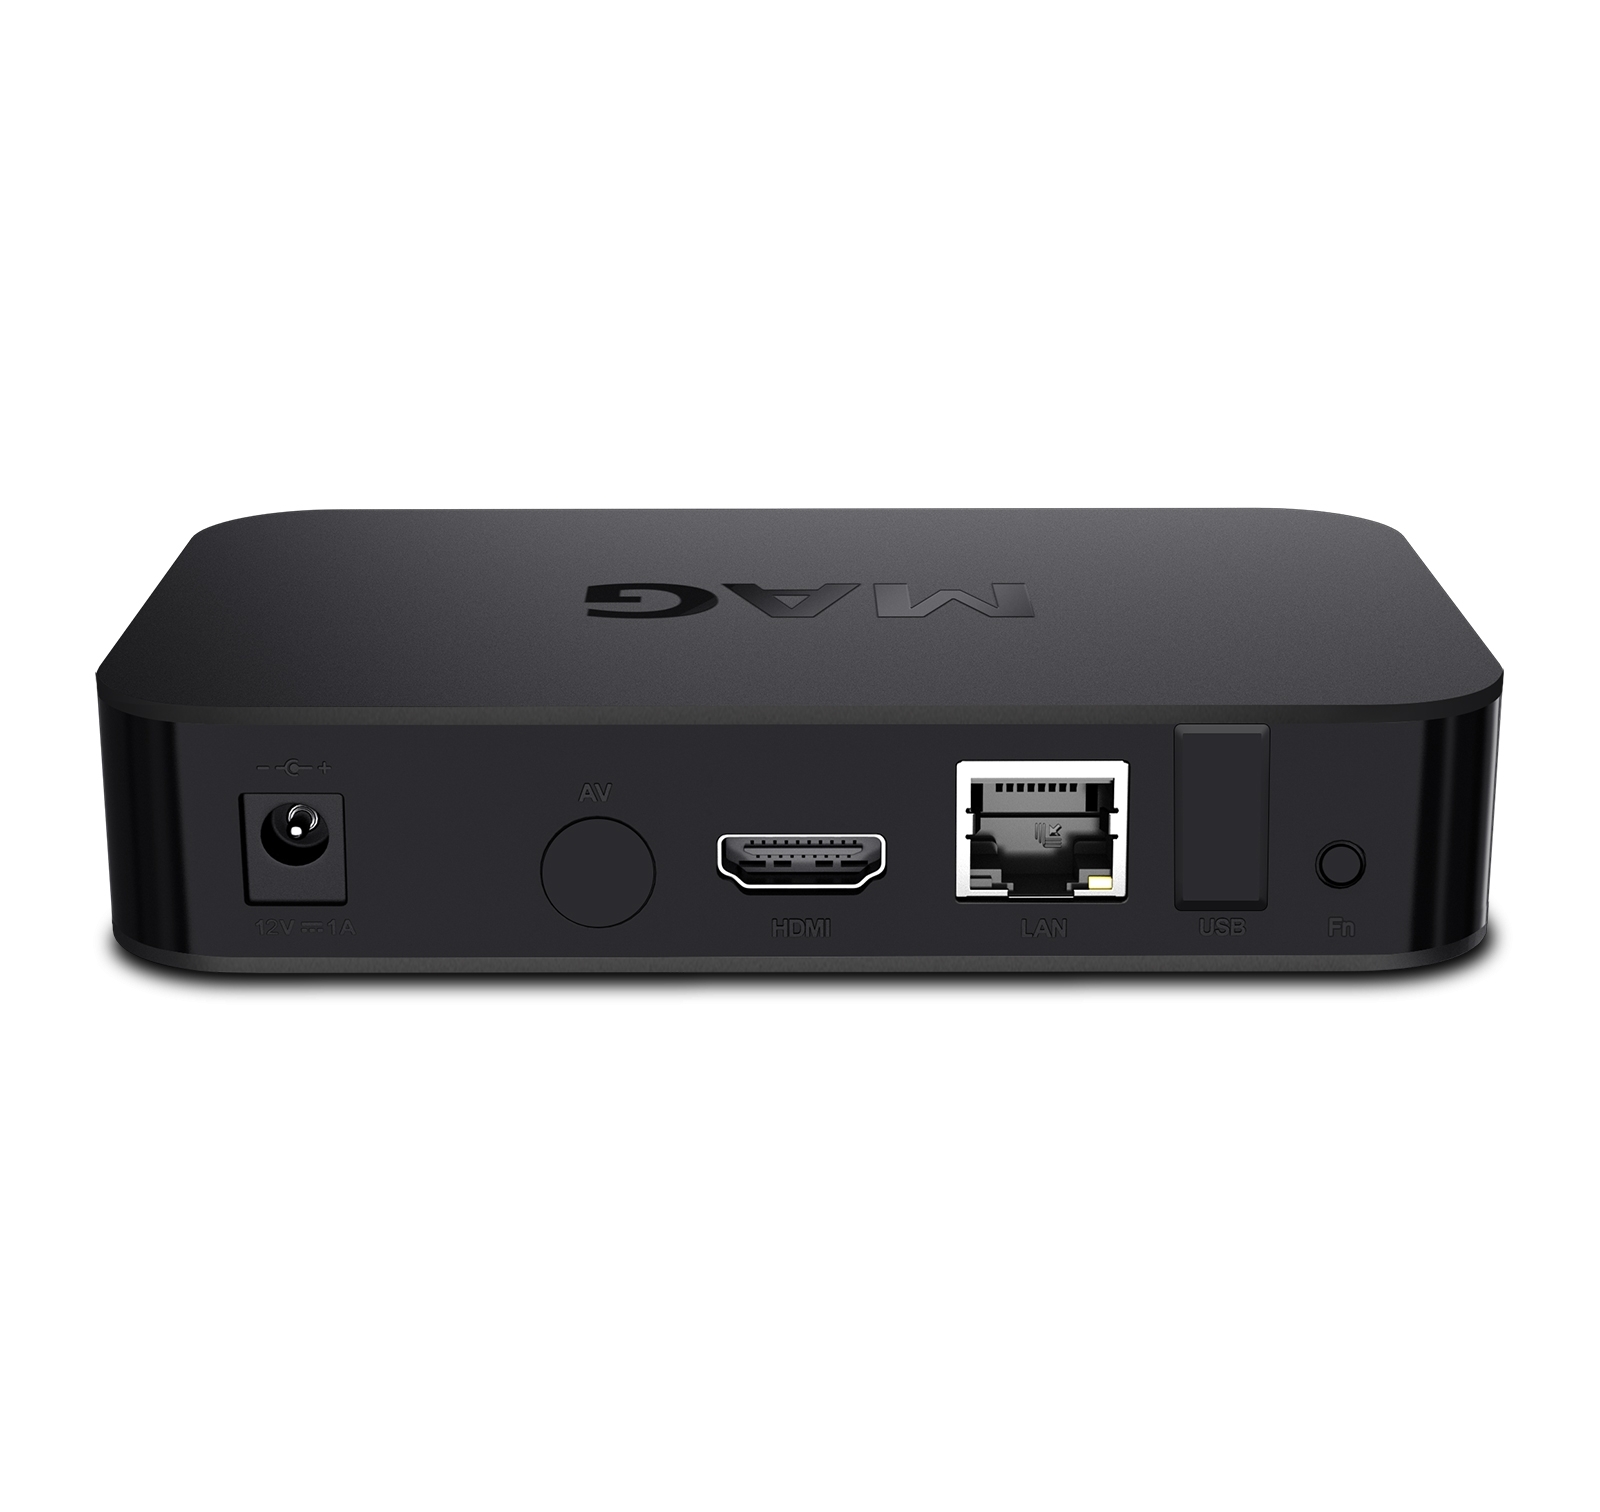 MAG 522 IPTV Set Top Box mit 4K und HEVC H 265 Unterstützung Linux